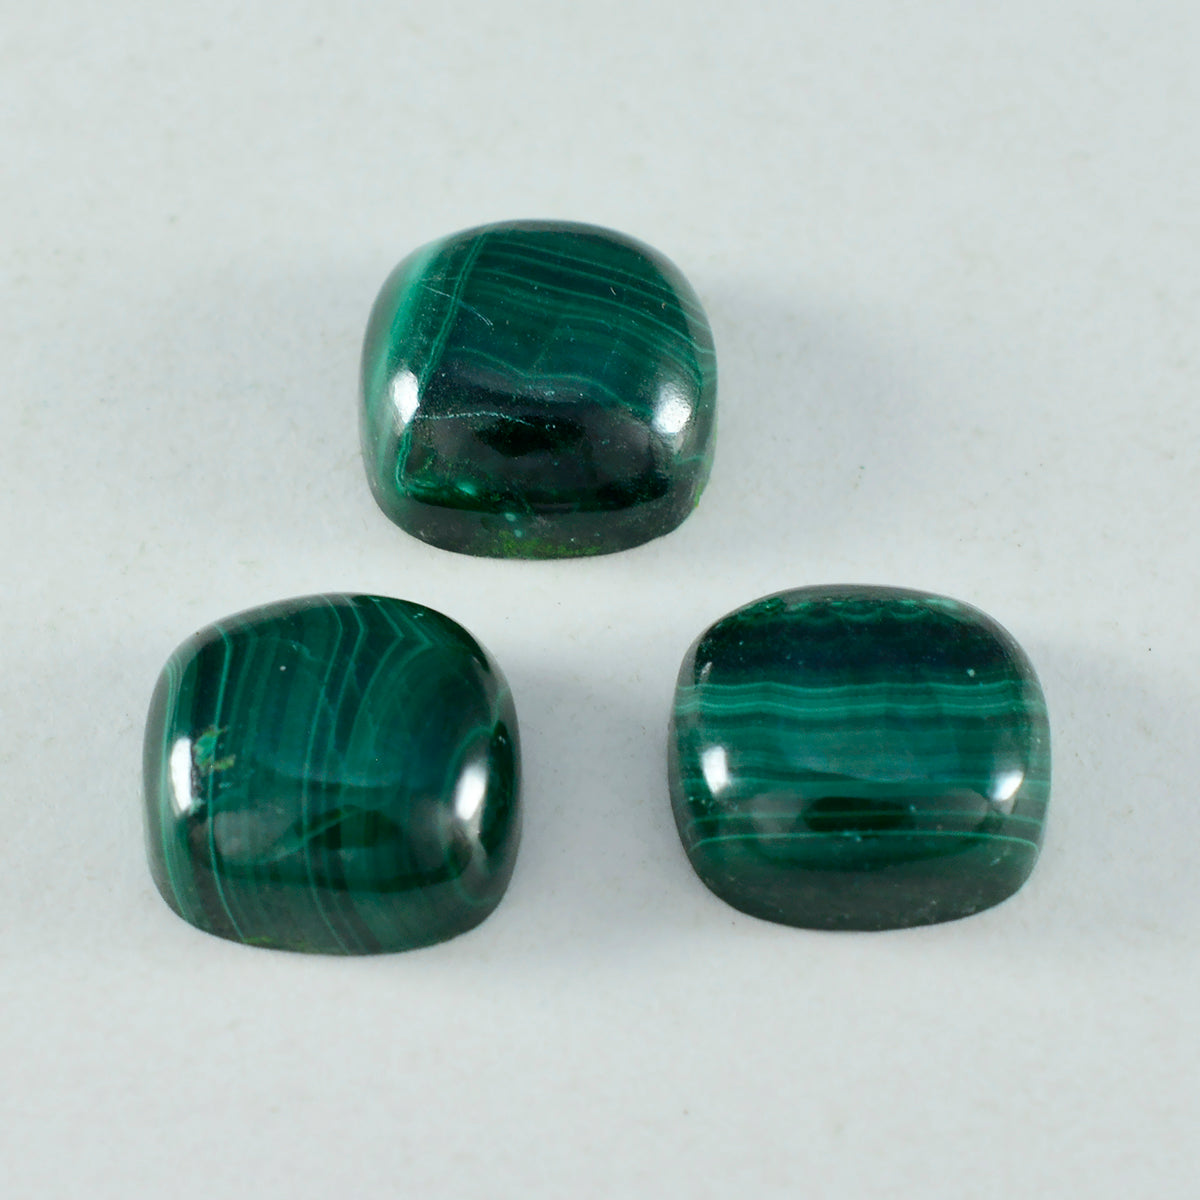 riyogems 1 шт. зеленый малахитовый кабошон 9x9 мм в форме подушки потрясающего качества, свободные драгоценные камни